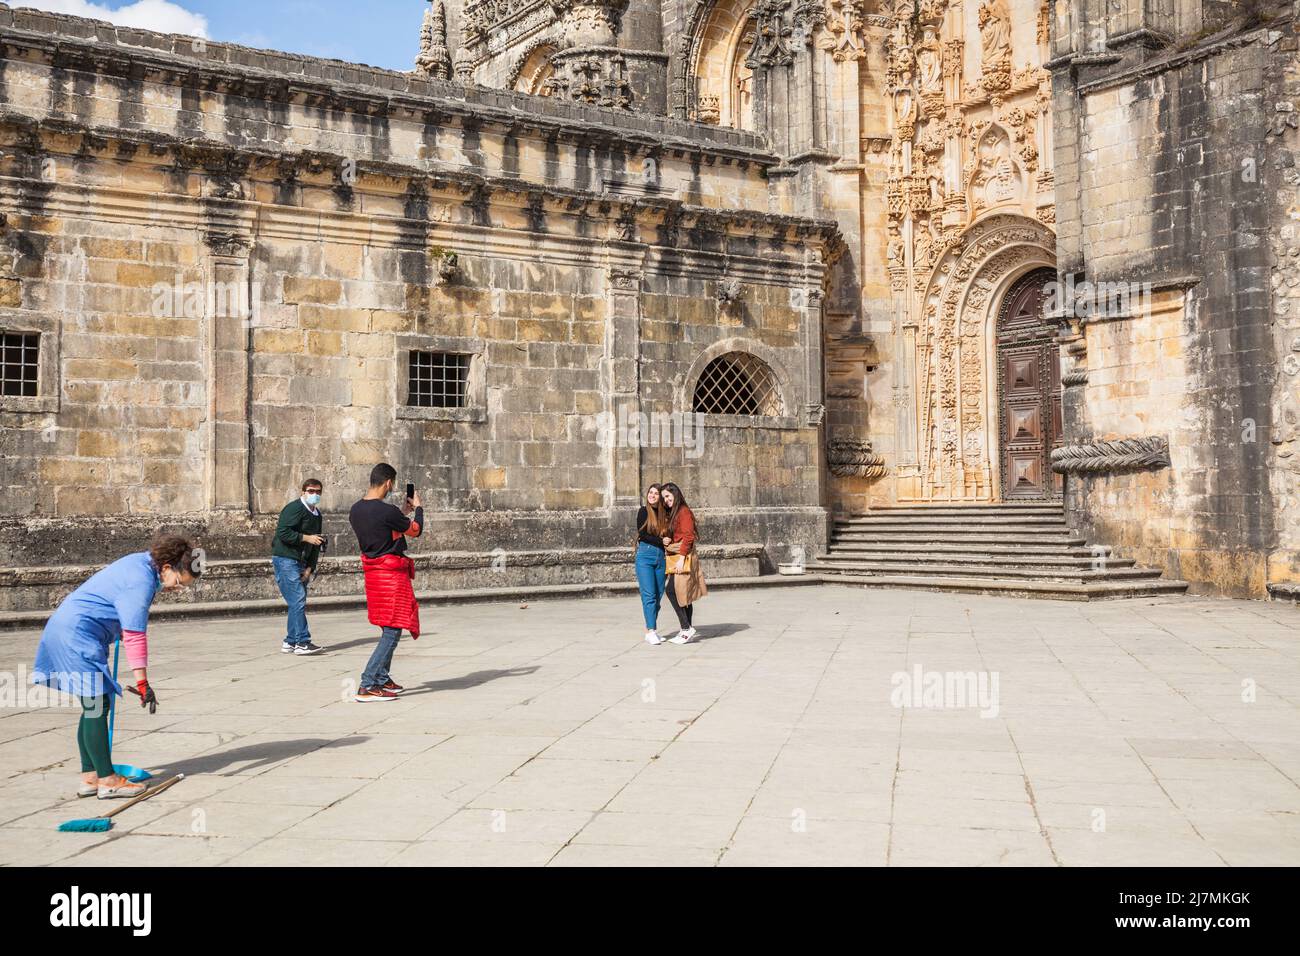 La gente toma fotos delante del mundialmente famoso castillo del monasterio de Tomar con una mujer de limpieza delante Foto de stock